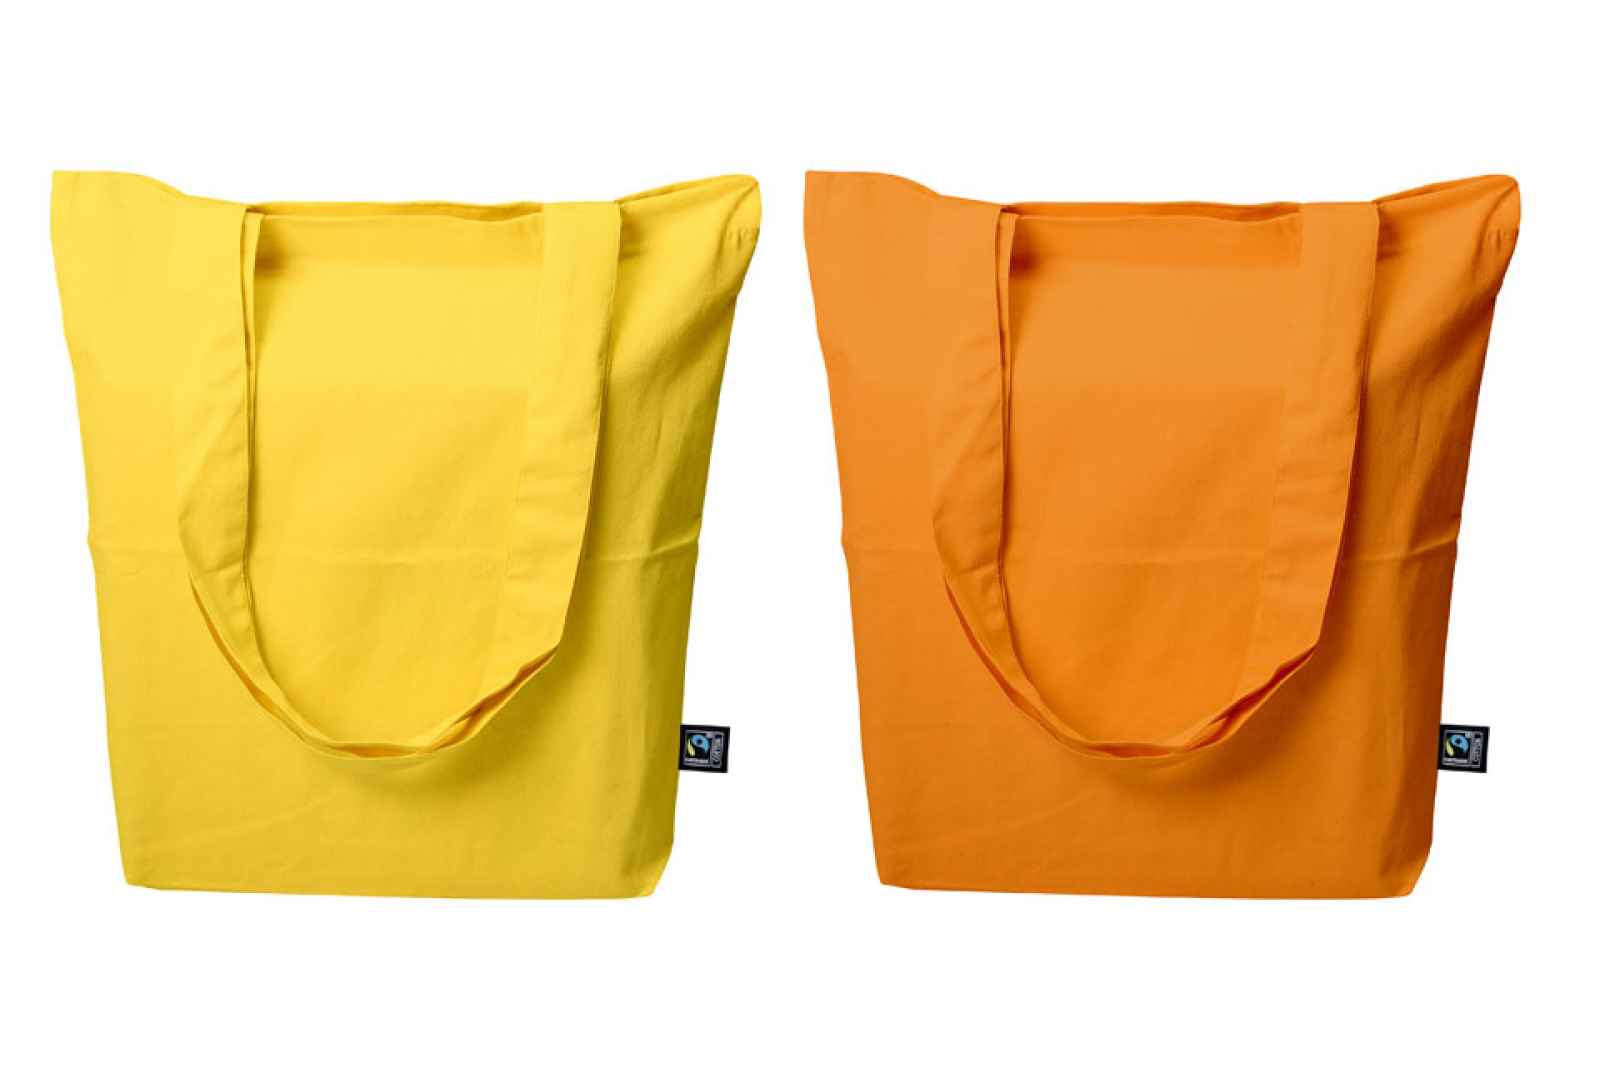 Baumwolltaschen Edda in orange und gelb als Werbeartikel 